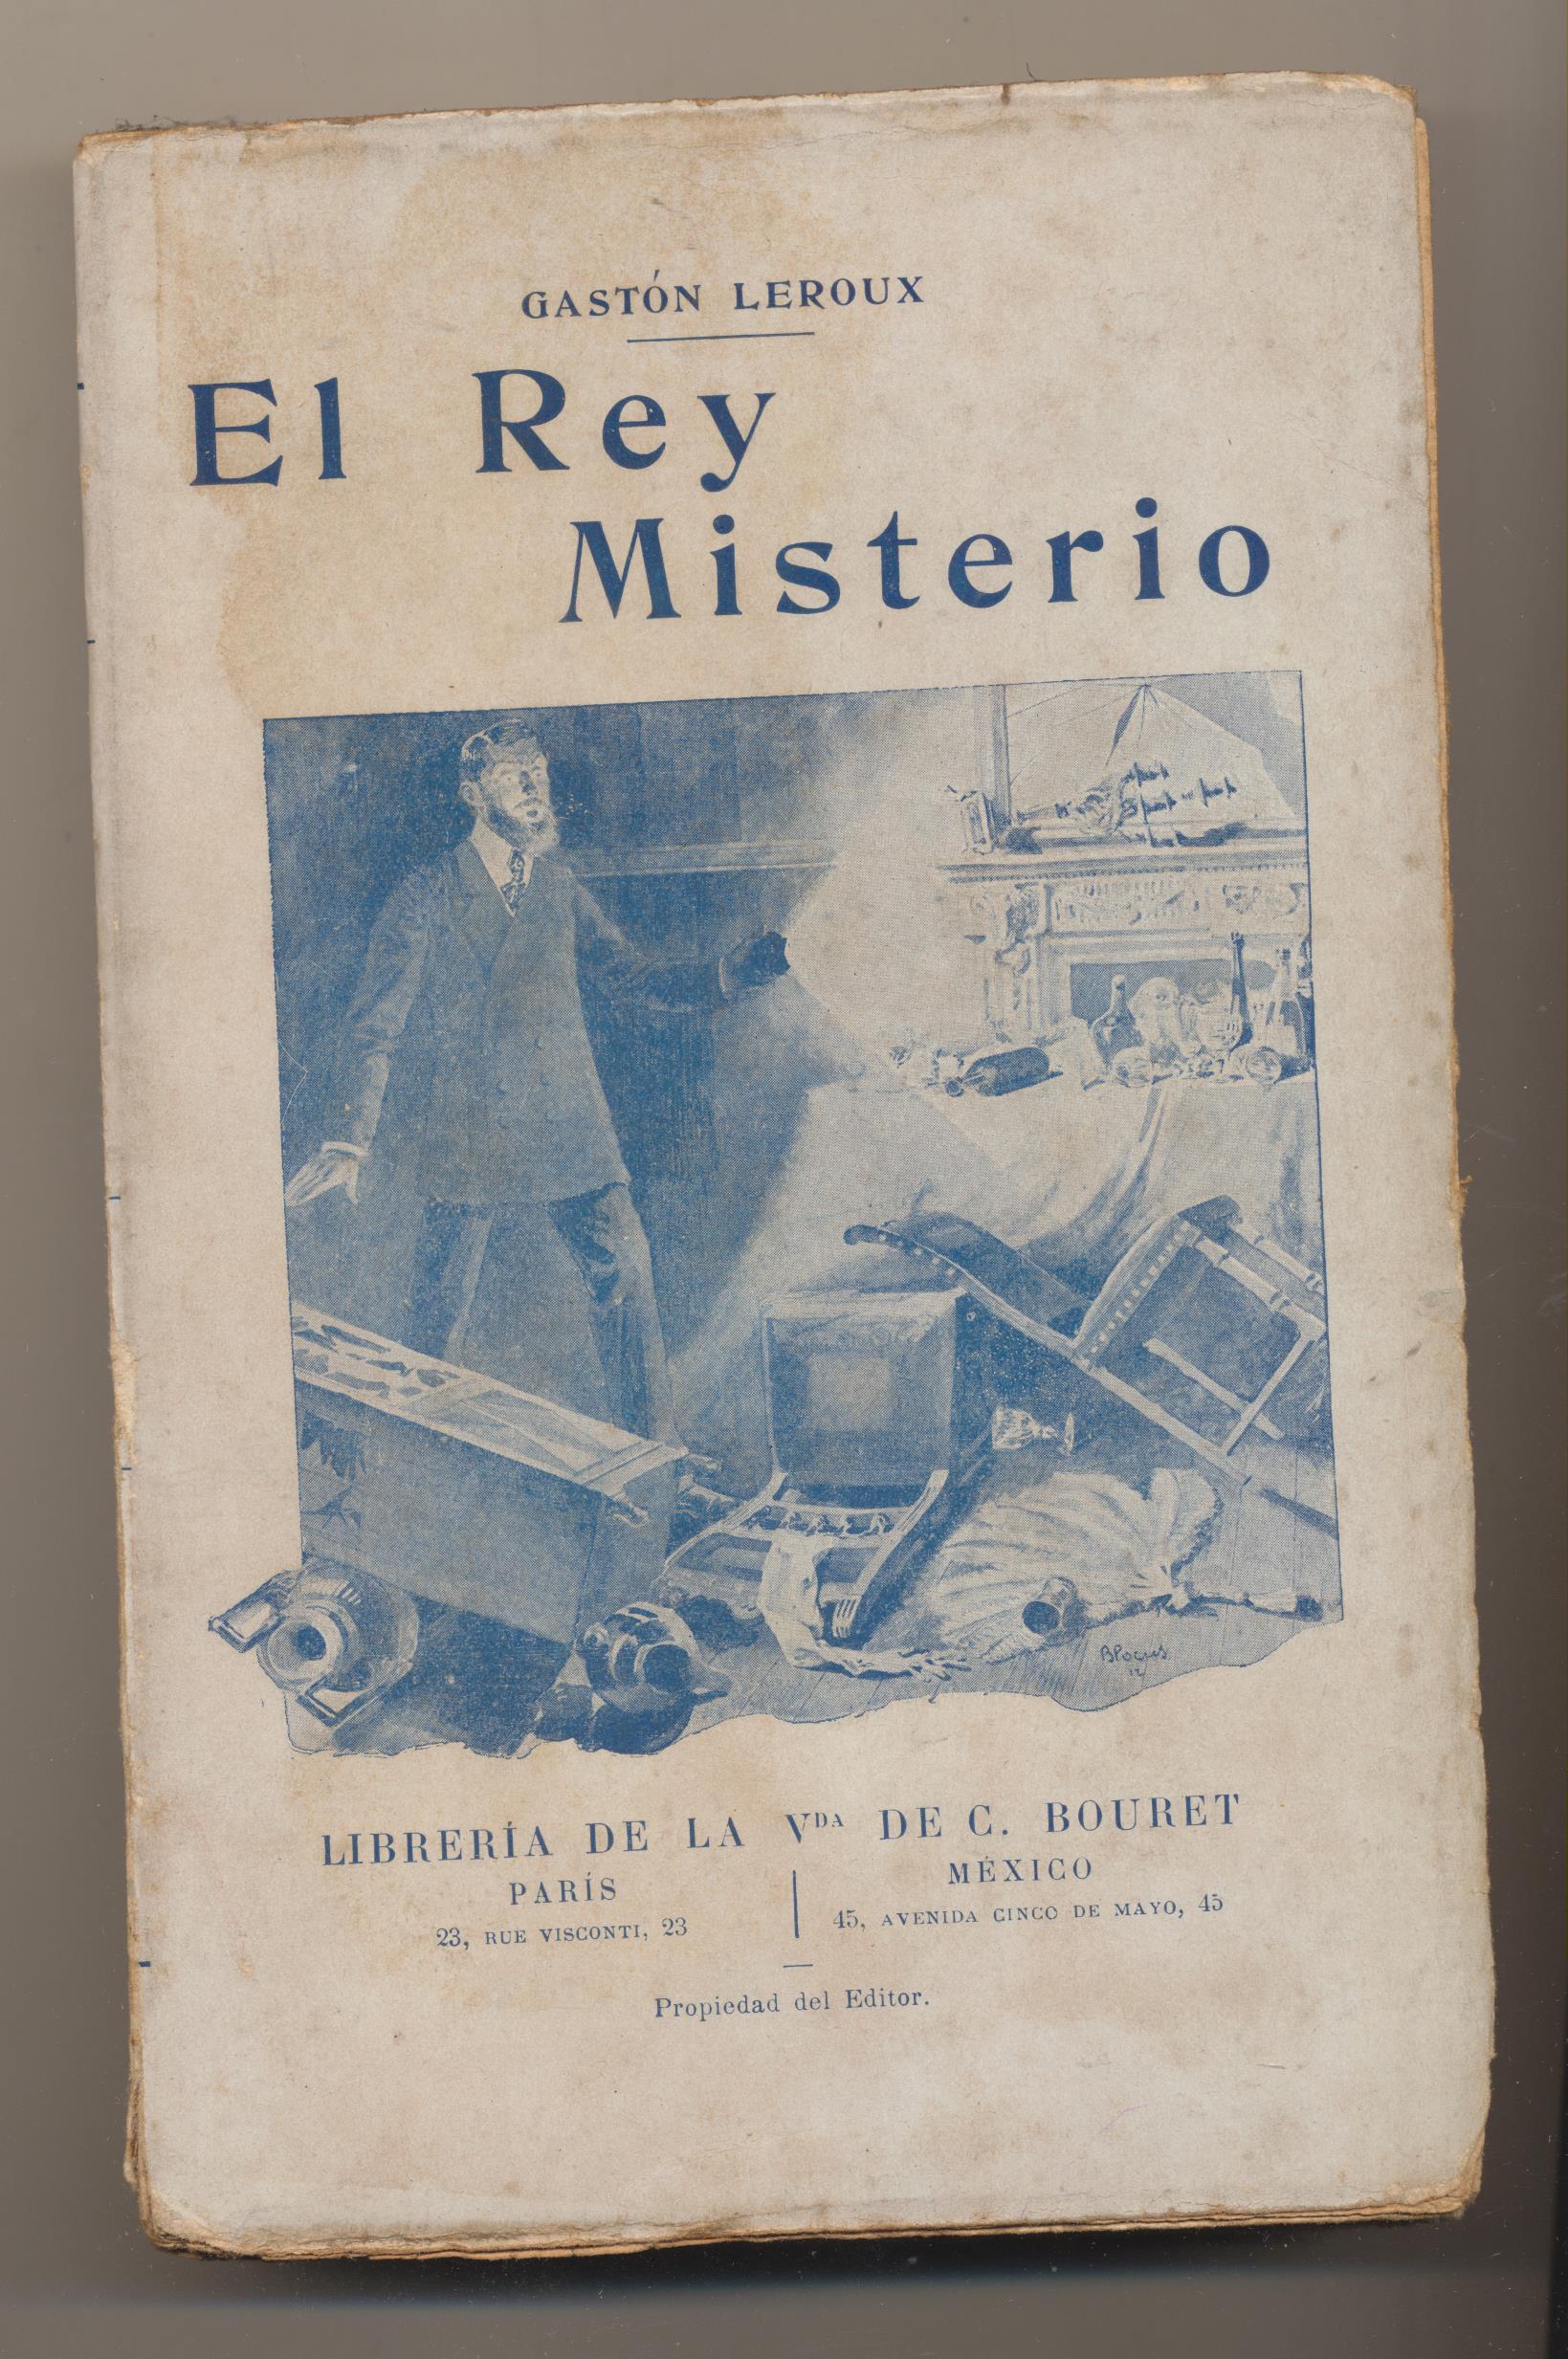 Gastón Leroux. El Rey Misterio. Librería de la Vda. de C. Bouret-Paris 1919